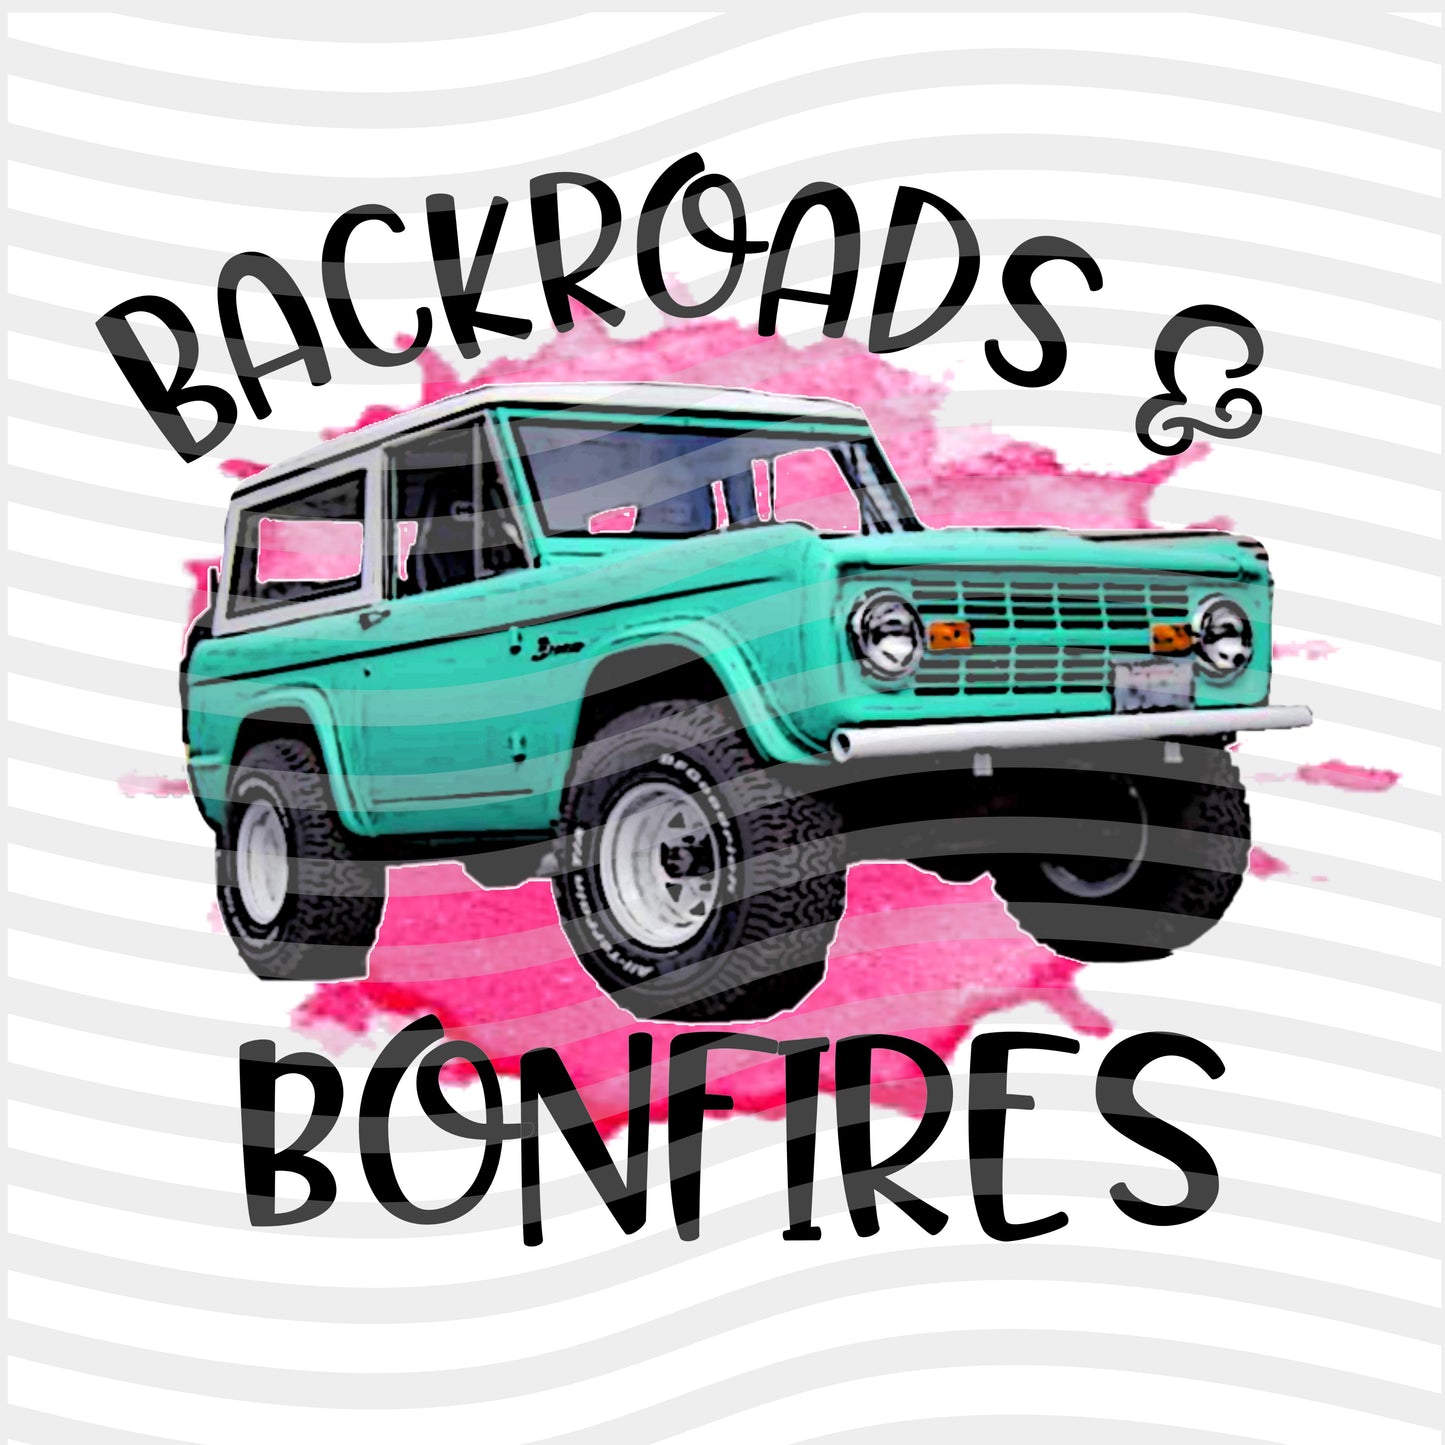 Backroads & Bonfires